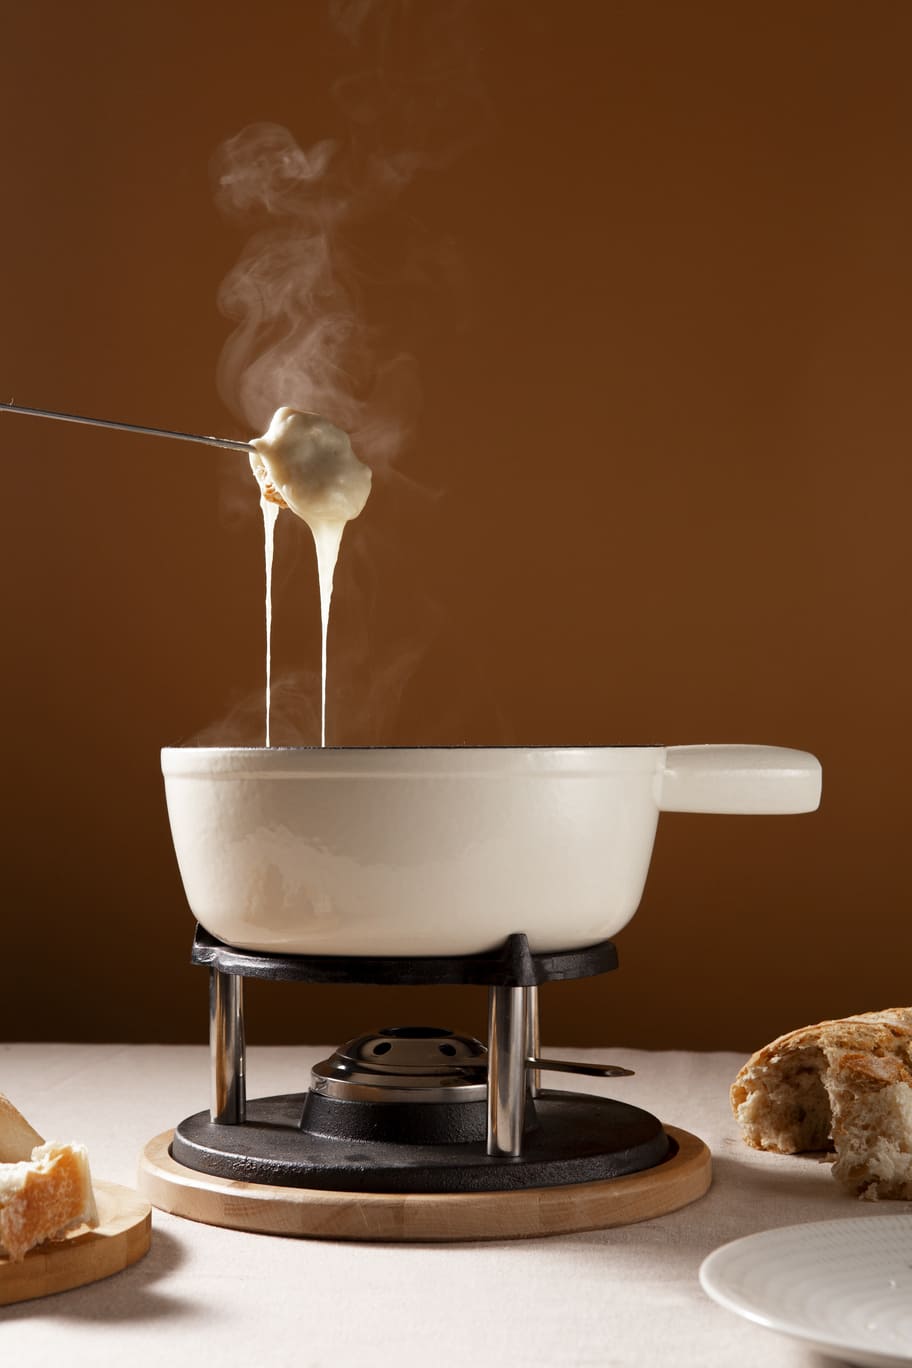 fondue savoyarde traditionnelle dans le caquelon à fondue